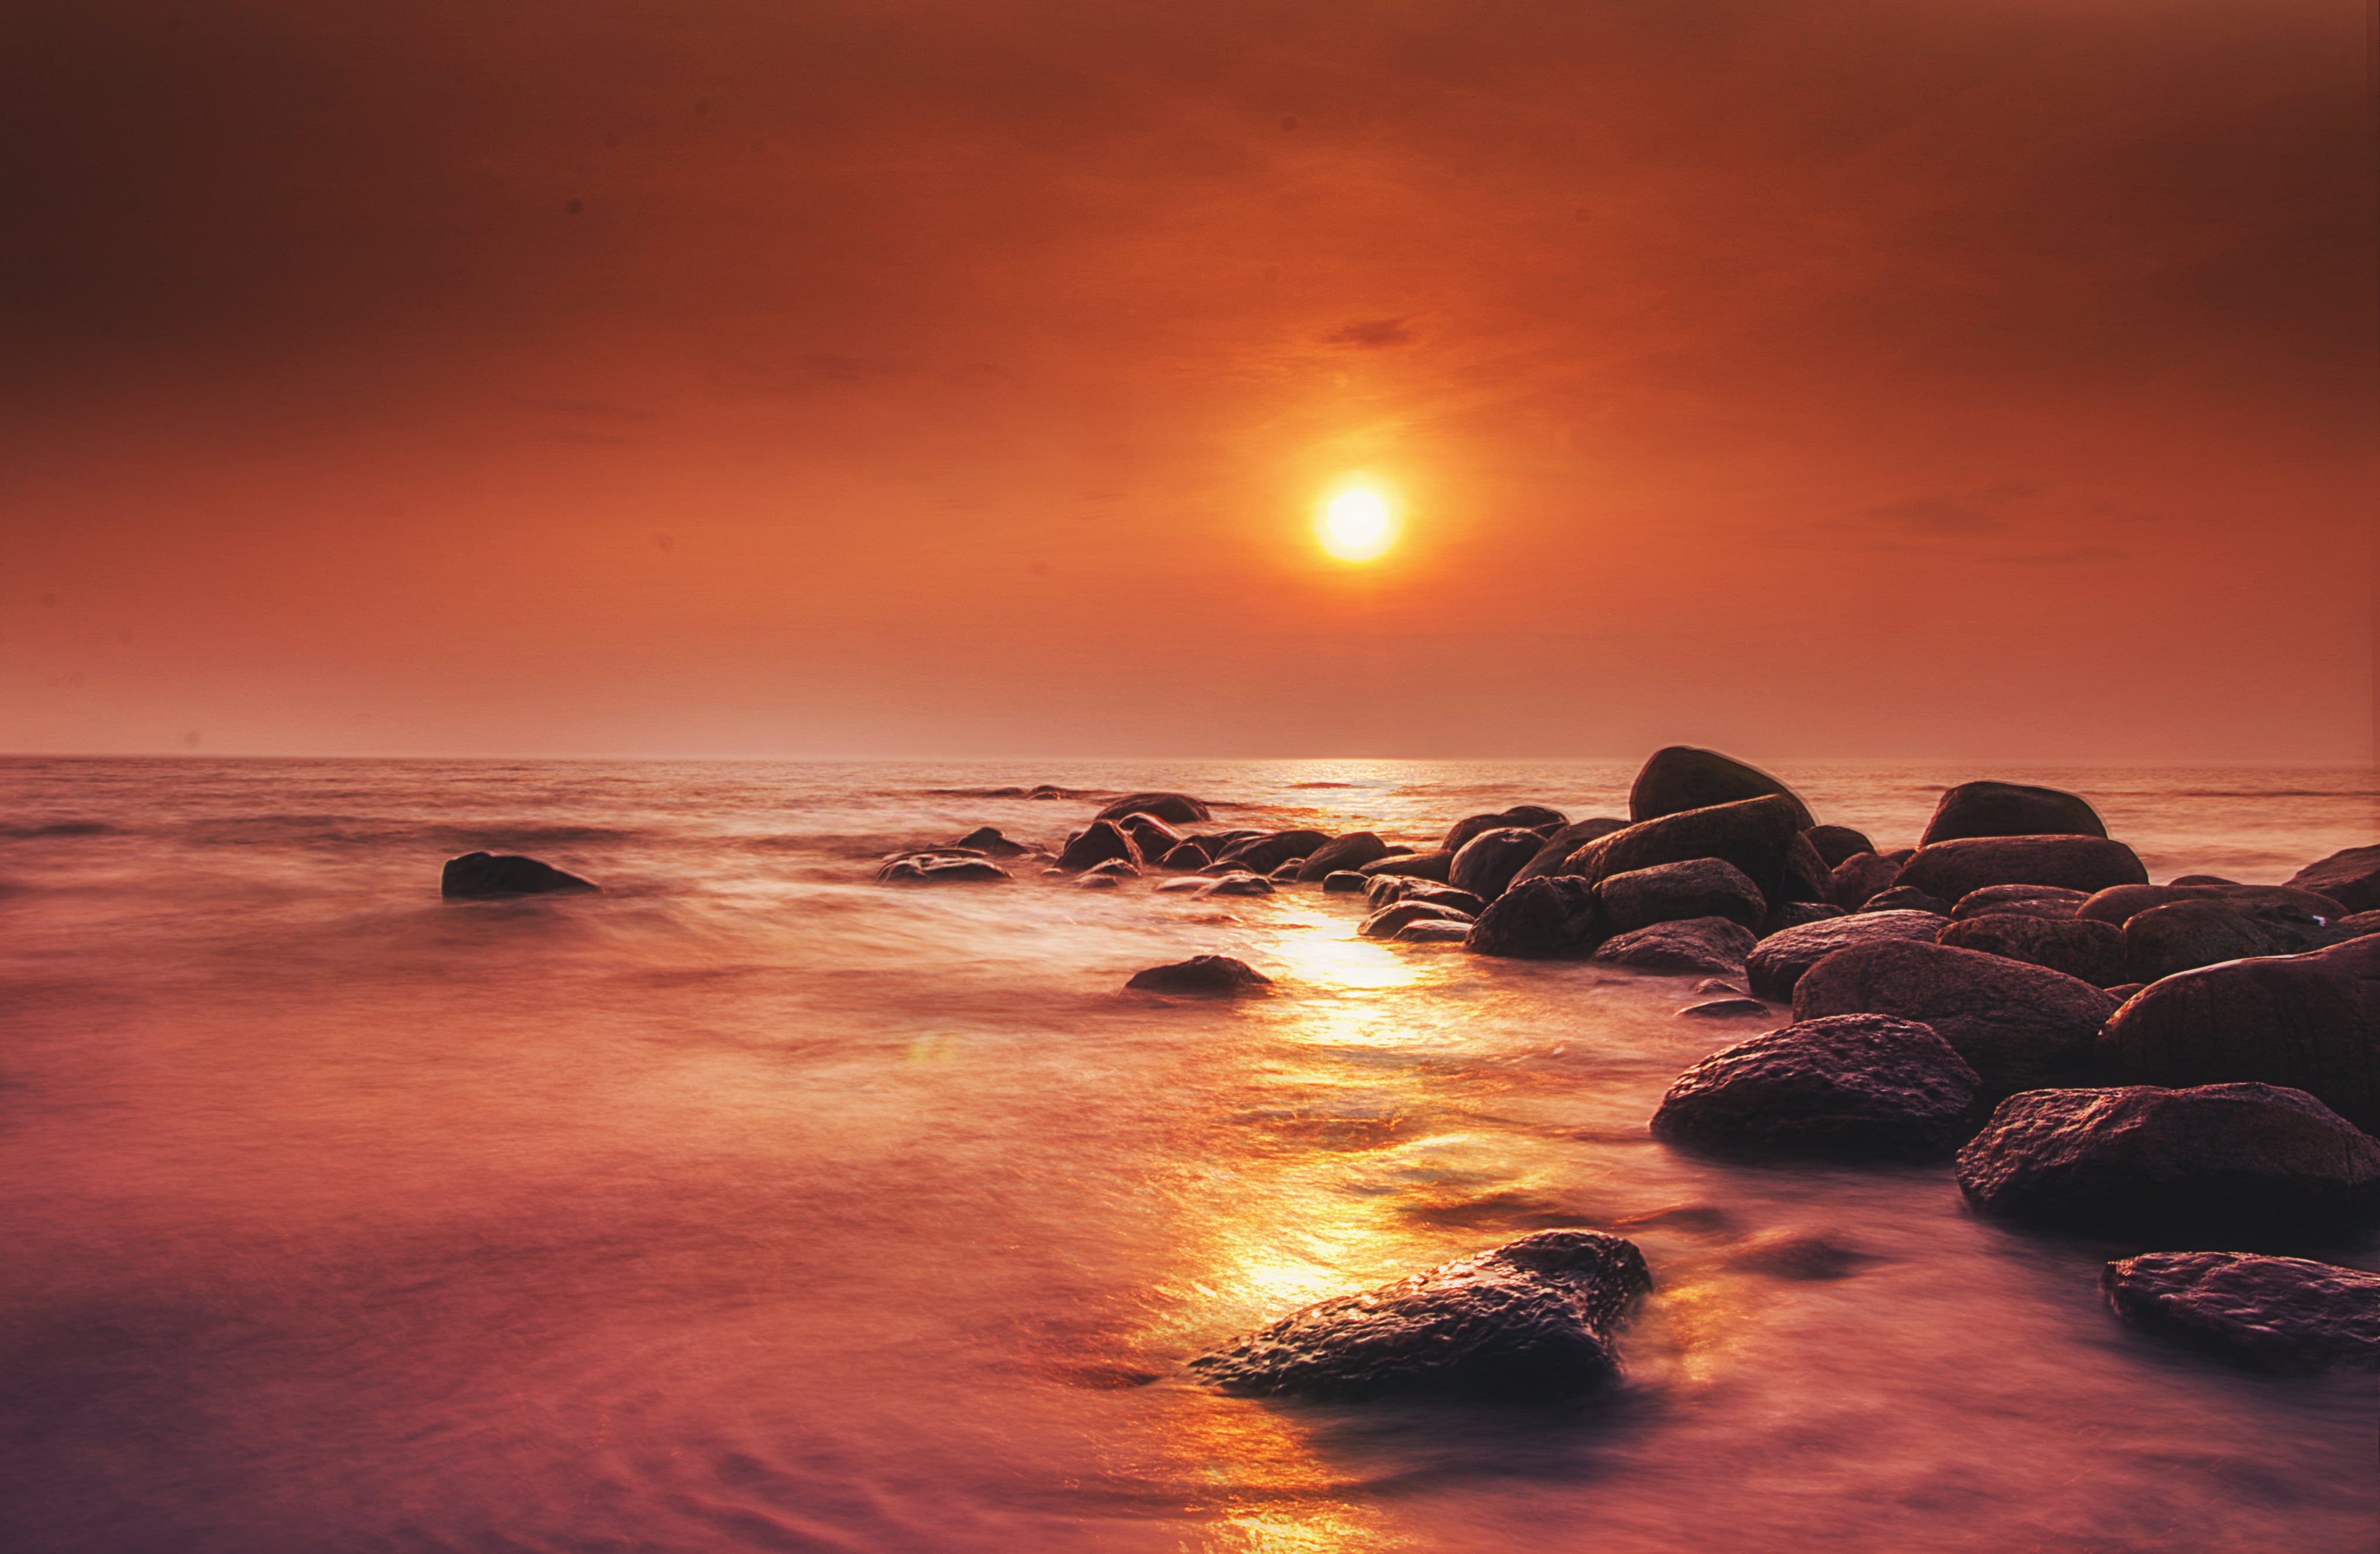 Rocky shore under golden sun at the horizon HD wallpaper | Wallpaper ...